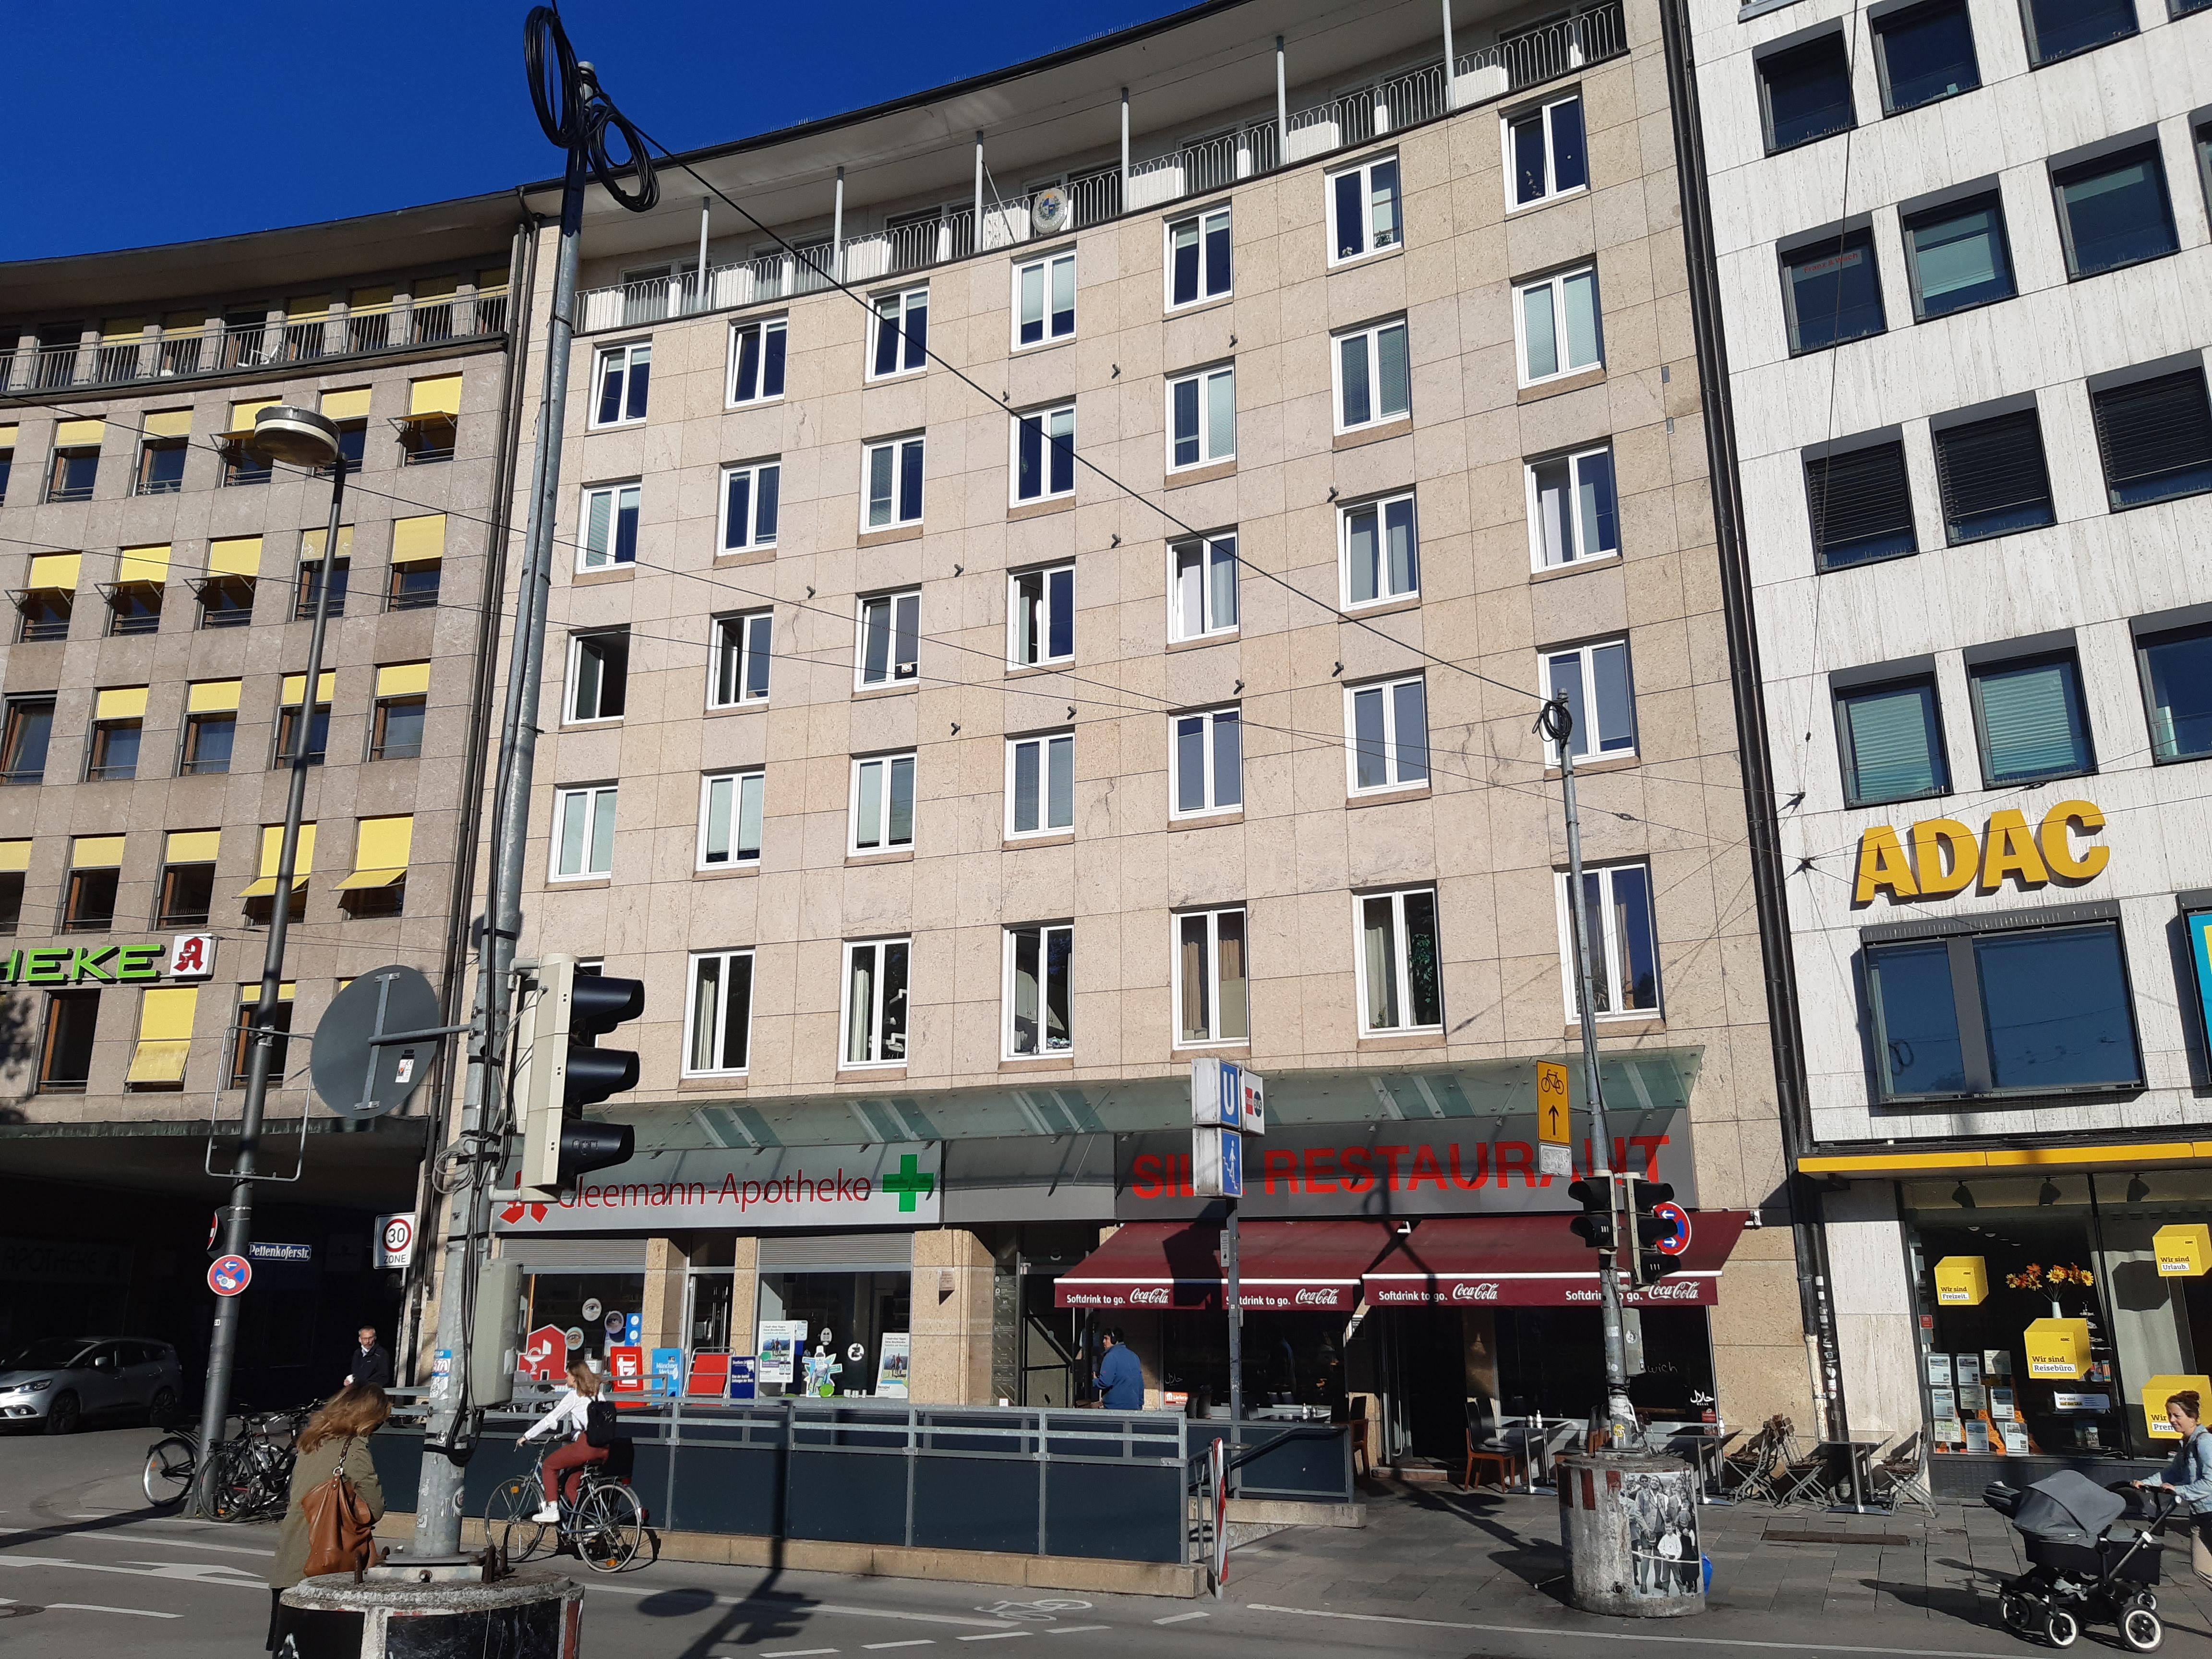 pluss München - Care People (Medizin/Pflege) & Bildung und Soziales, Sendlinger-Tor-Platz 8 in München